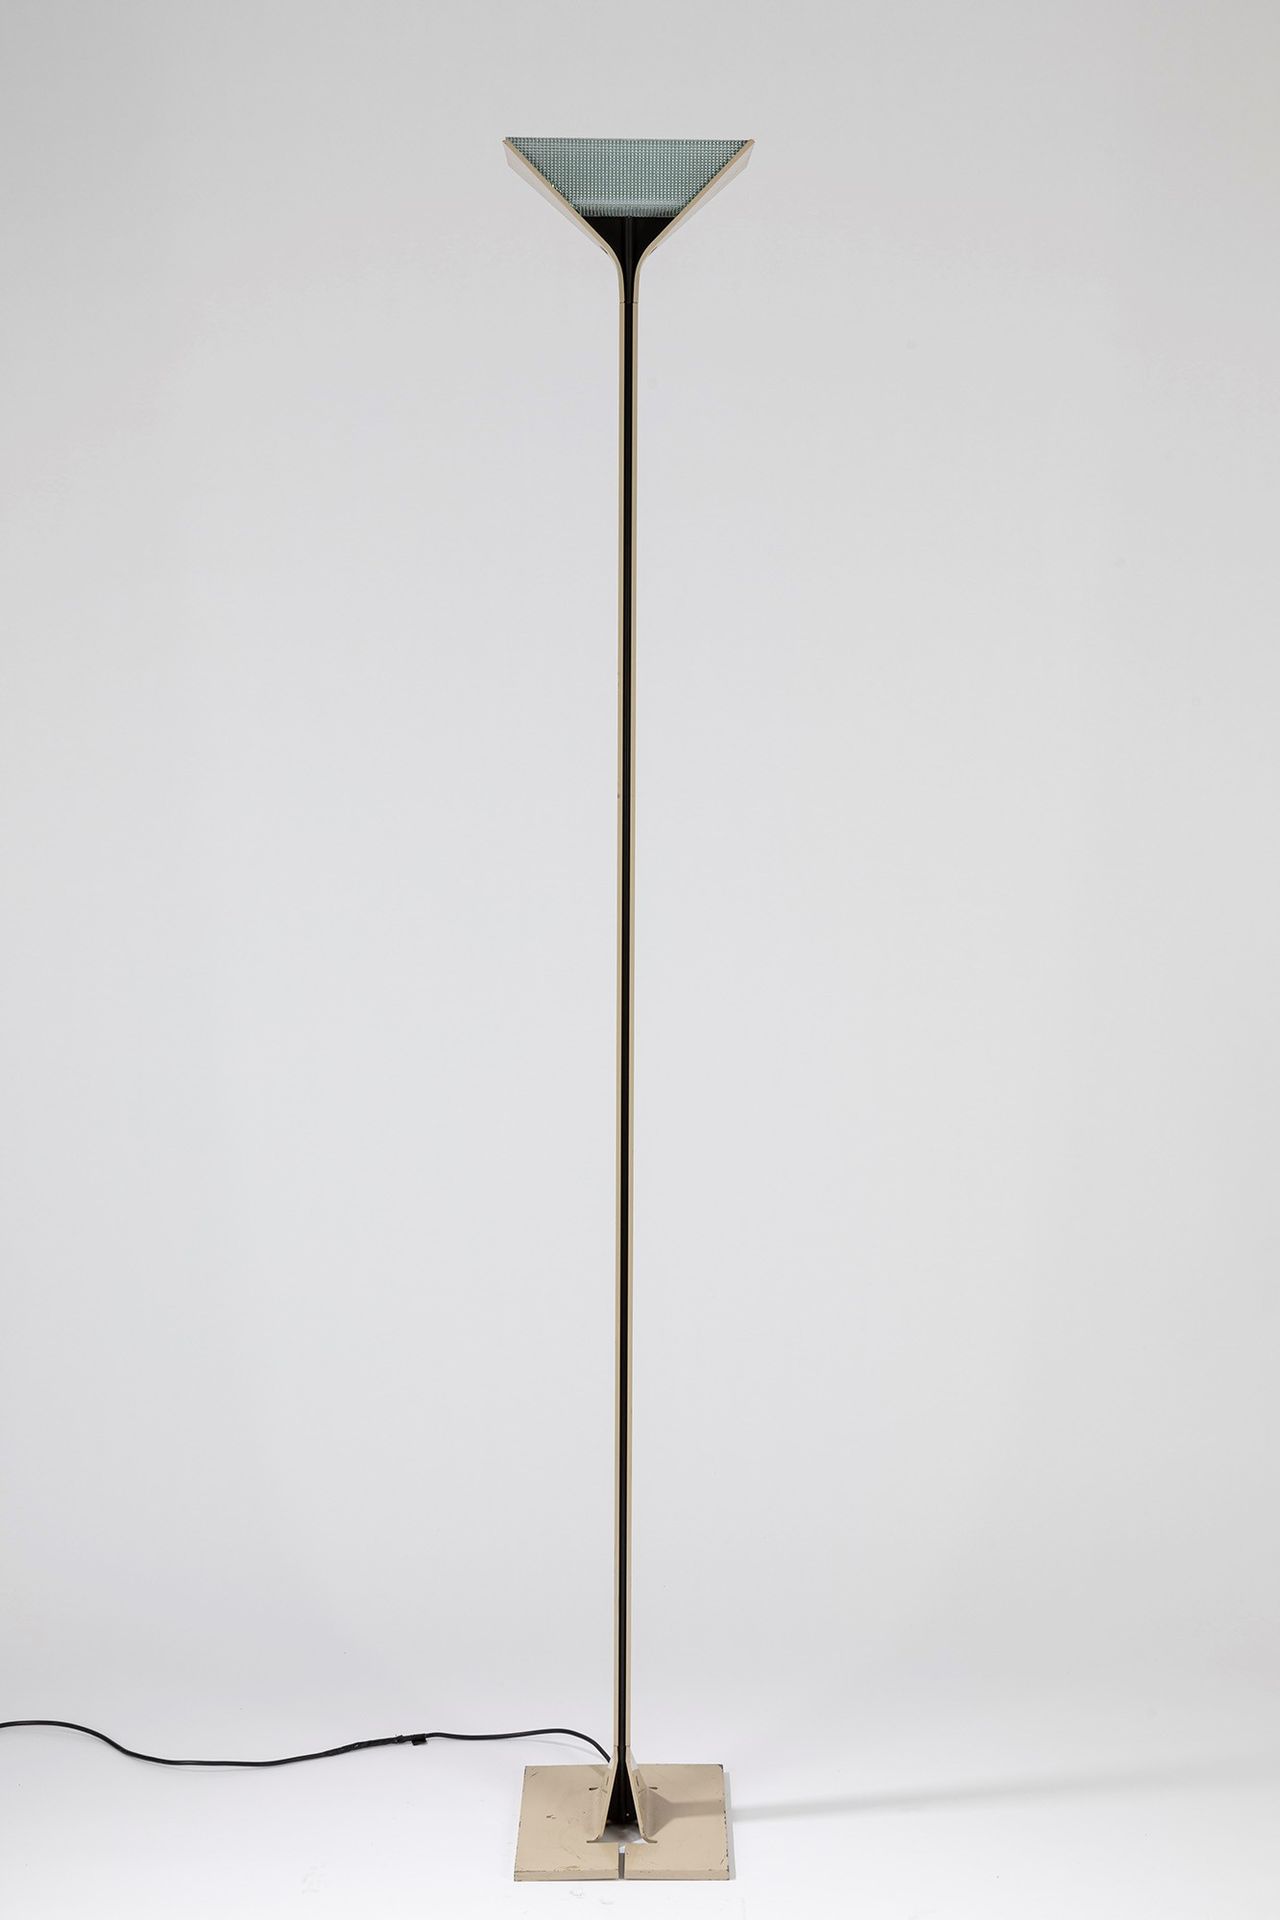 Tobia Scarpa Paire de lampadaires, période 70's

cm h 190 x 25 x 25
Tobia bow ti&hellip;